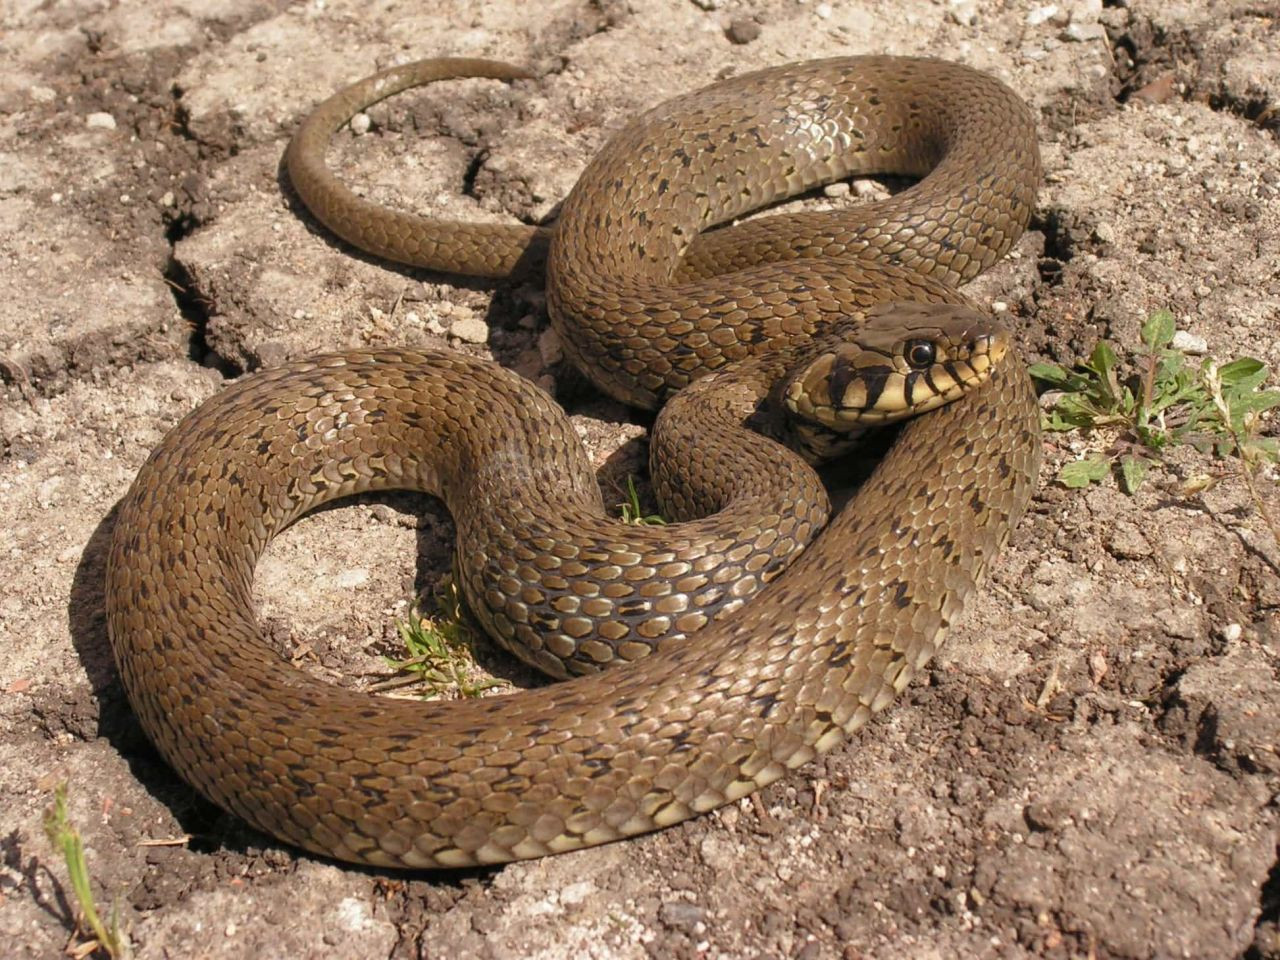 Bunlara dikkat Yılanları evinize çekiyor: İşte yılanların en sevdiği yiyecekler ve evinize mıknatıs gibi çeken 5 faktör - Resim: 1